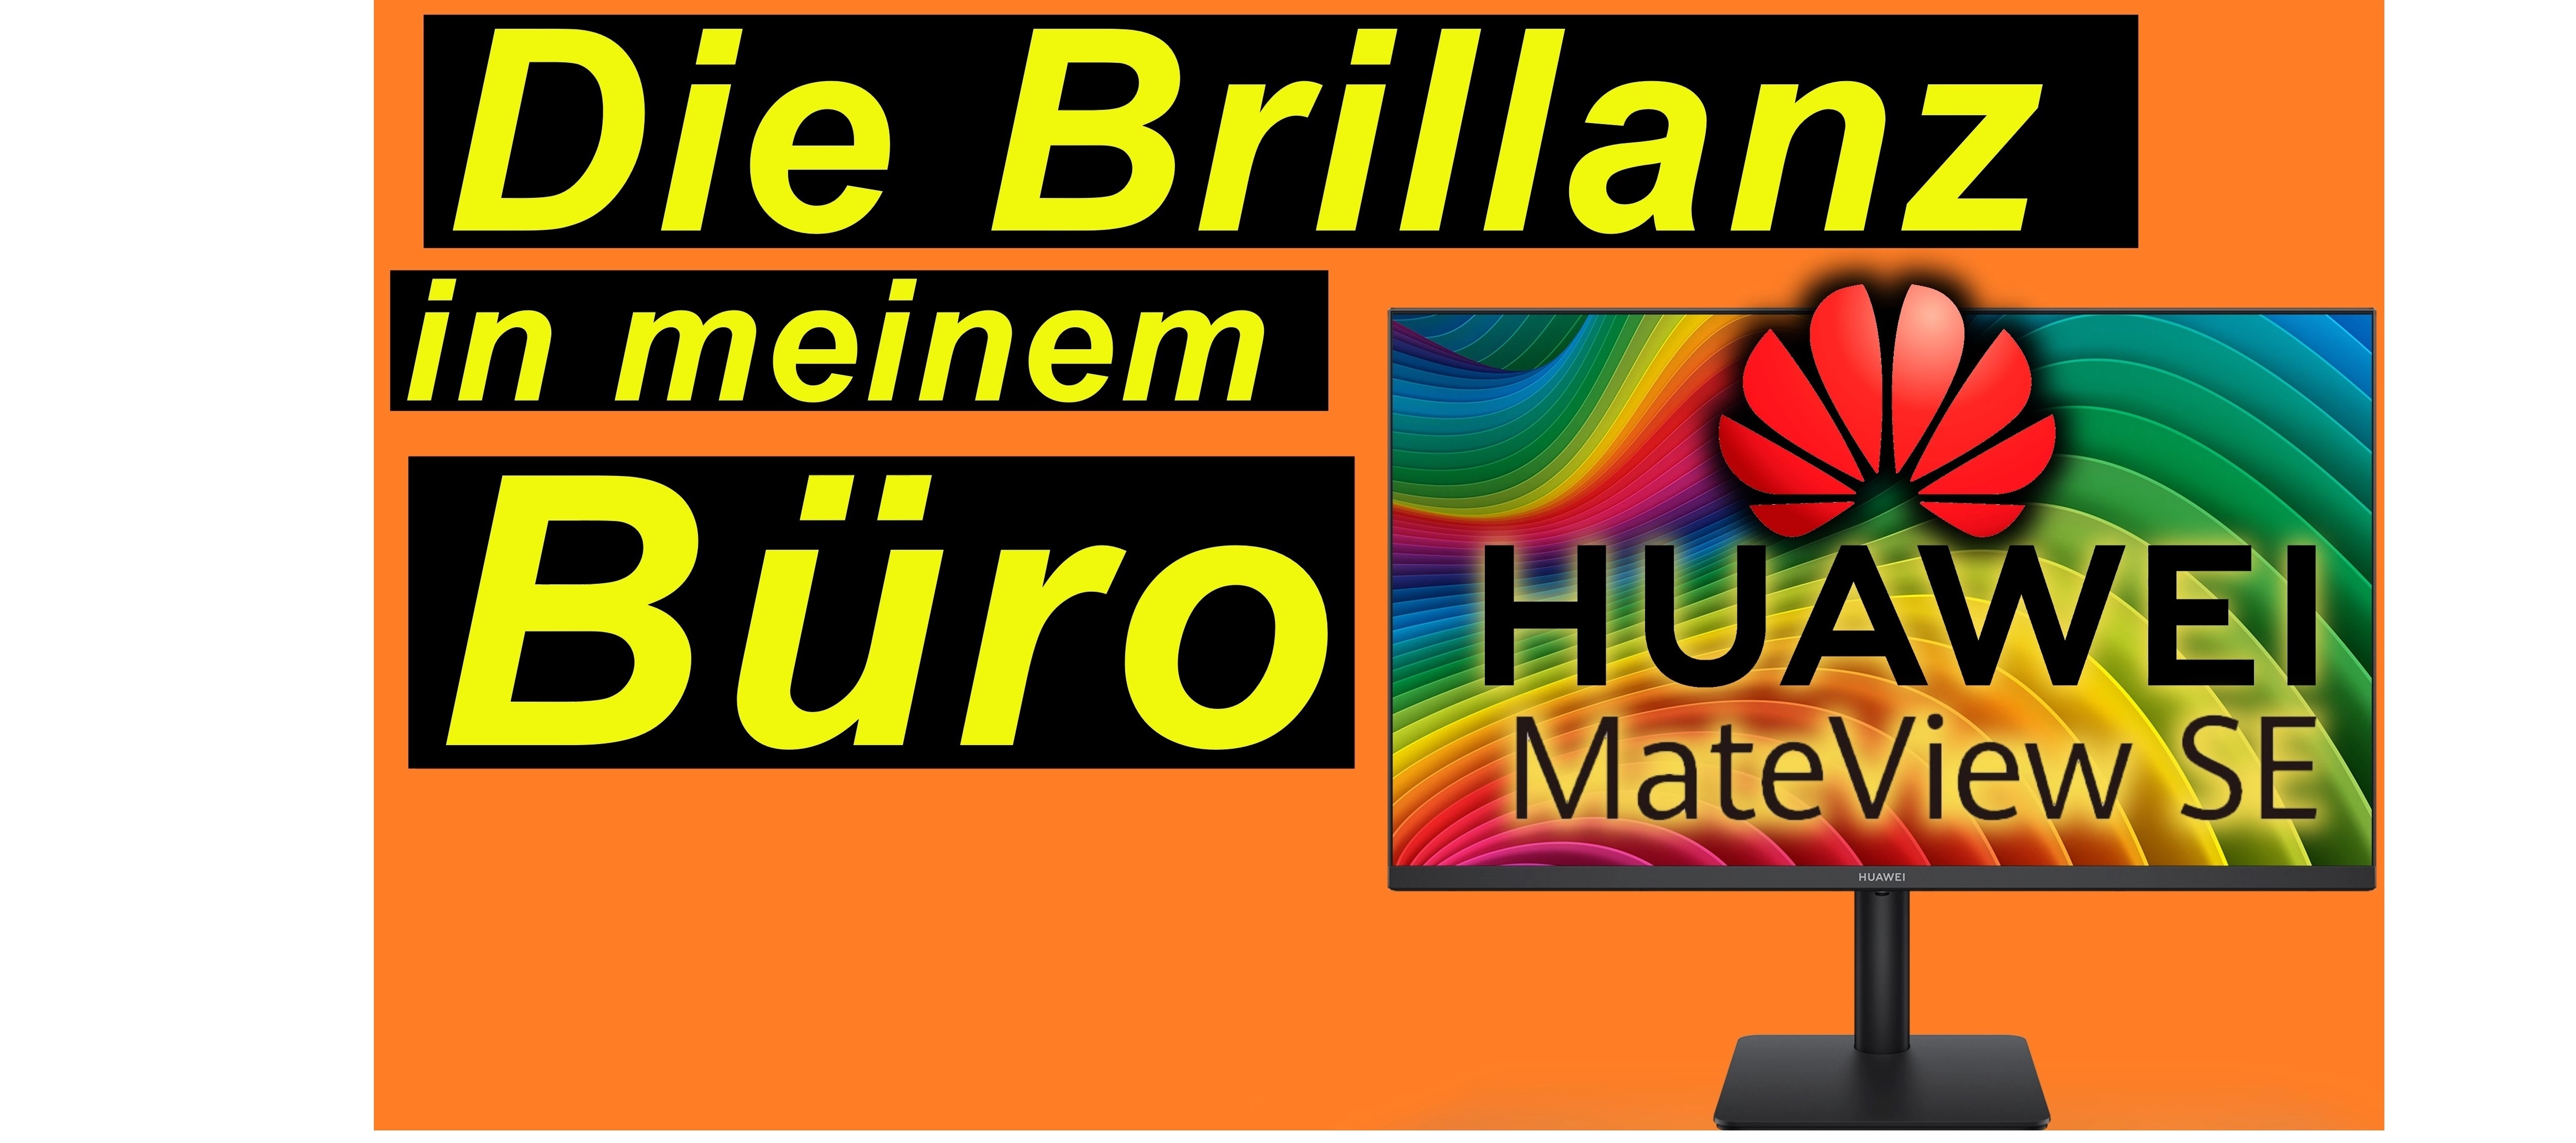 Huawei MateView SE - die 24 Zoll Brillanz auf dem Schreibtisch